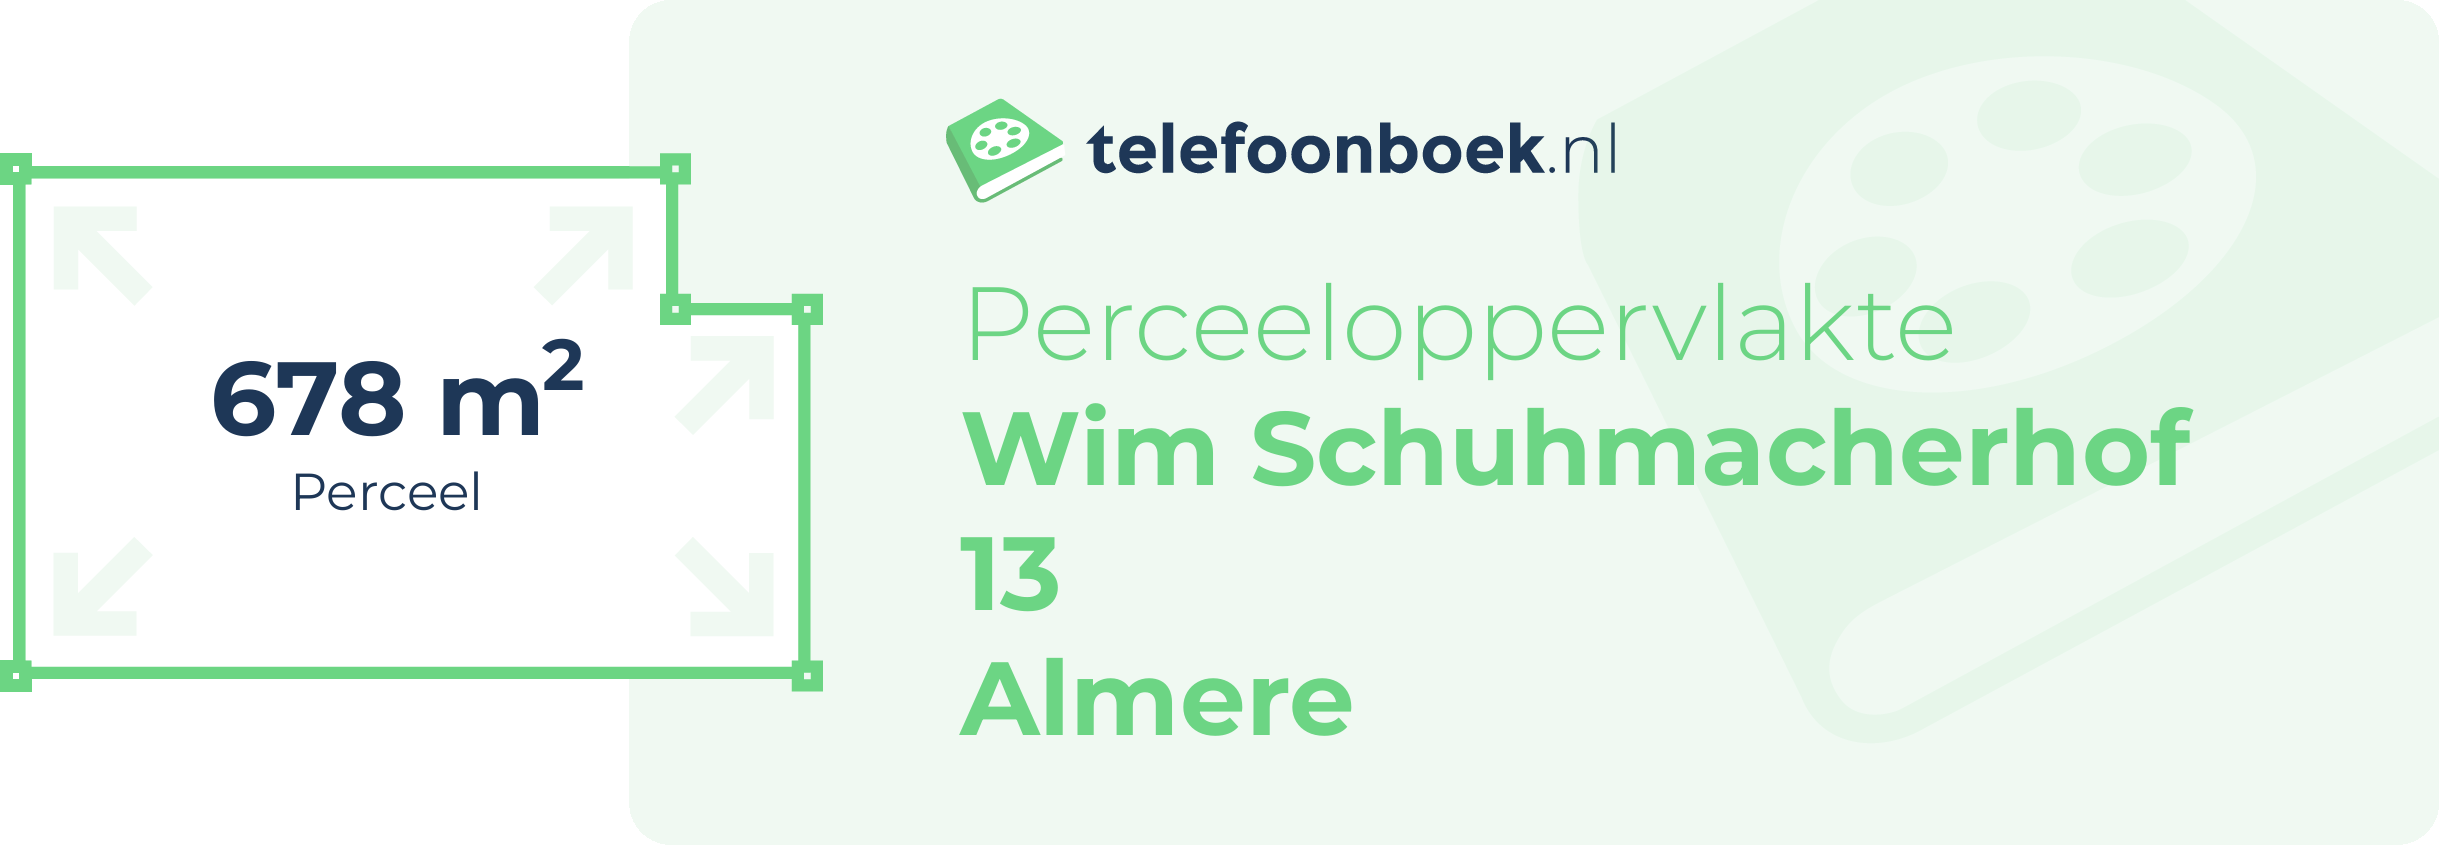 Perceeloppervlakte Wim Schuhmacherhof 13 Almere